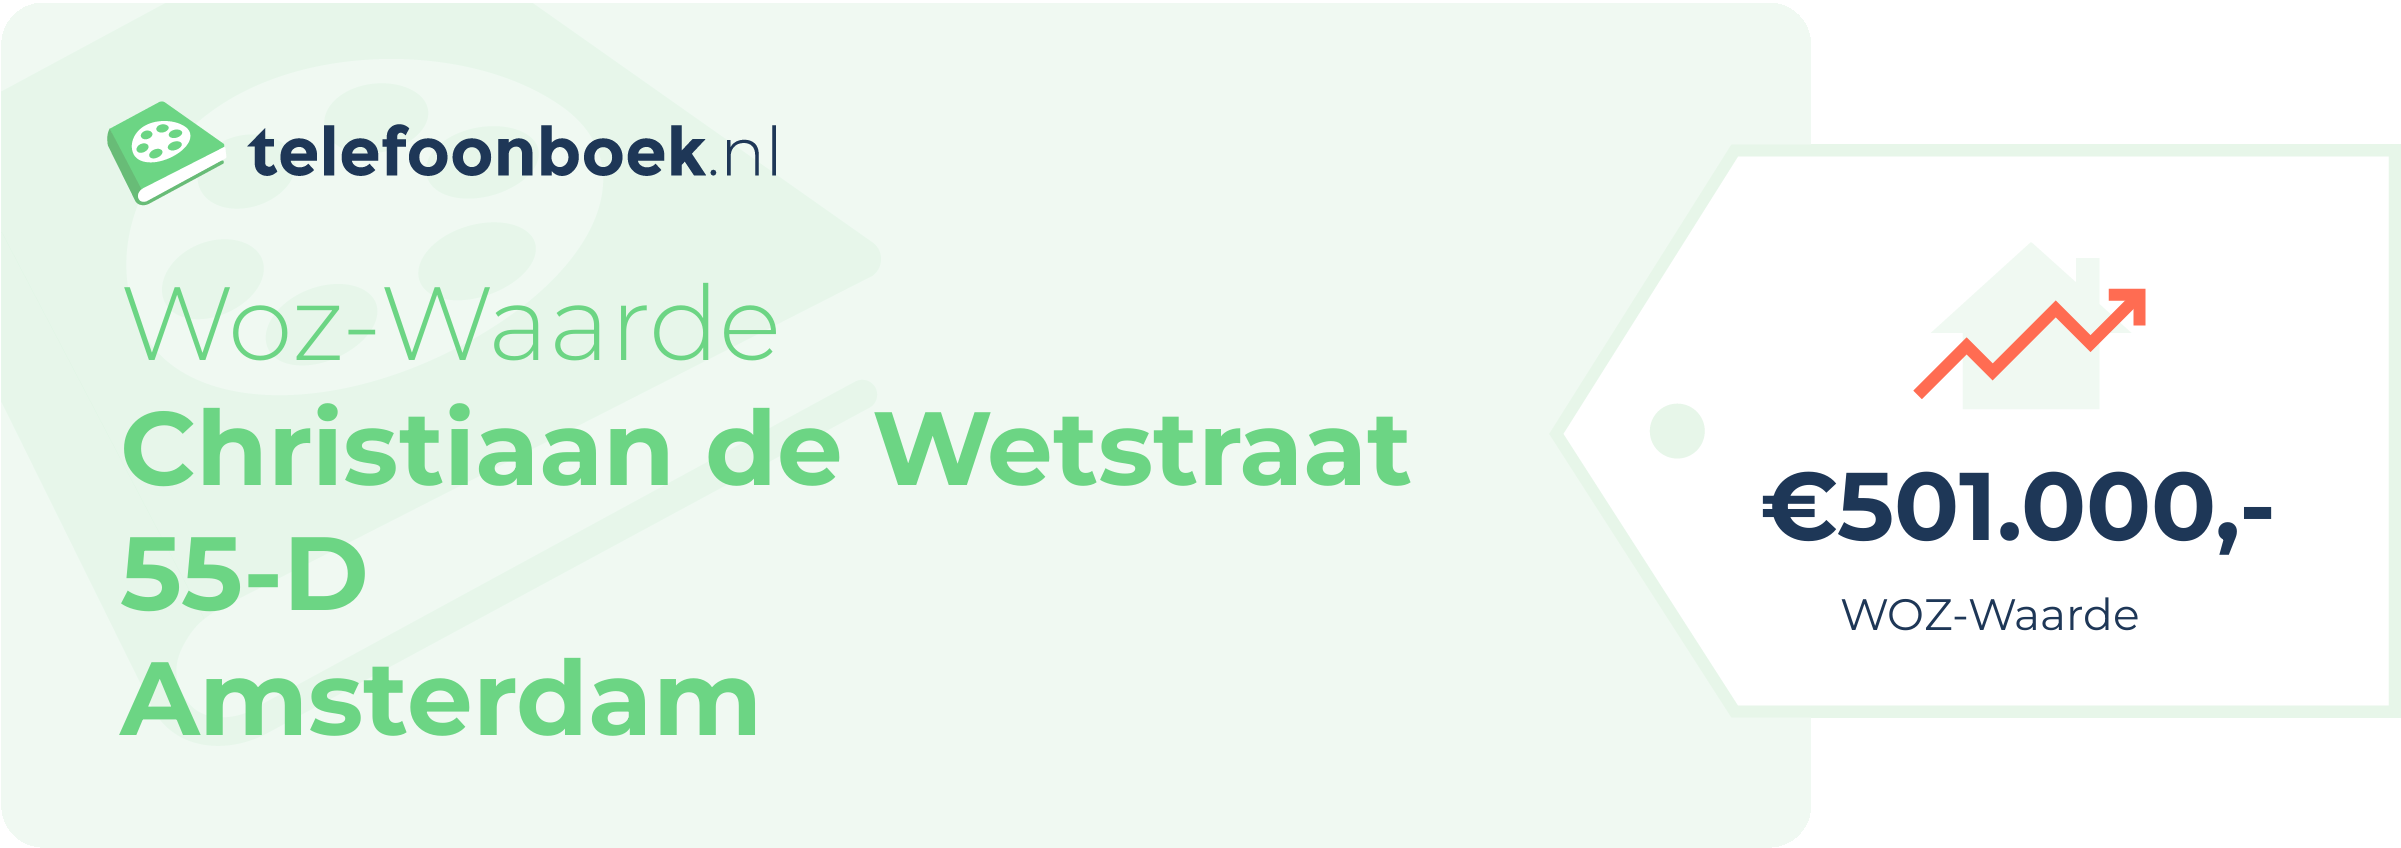 WOZ-waarde Christiaan De Wetstraat 55-D Amsterdam